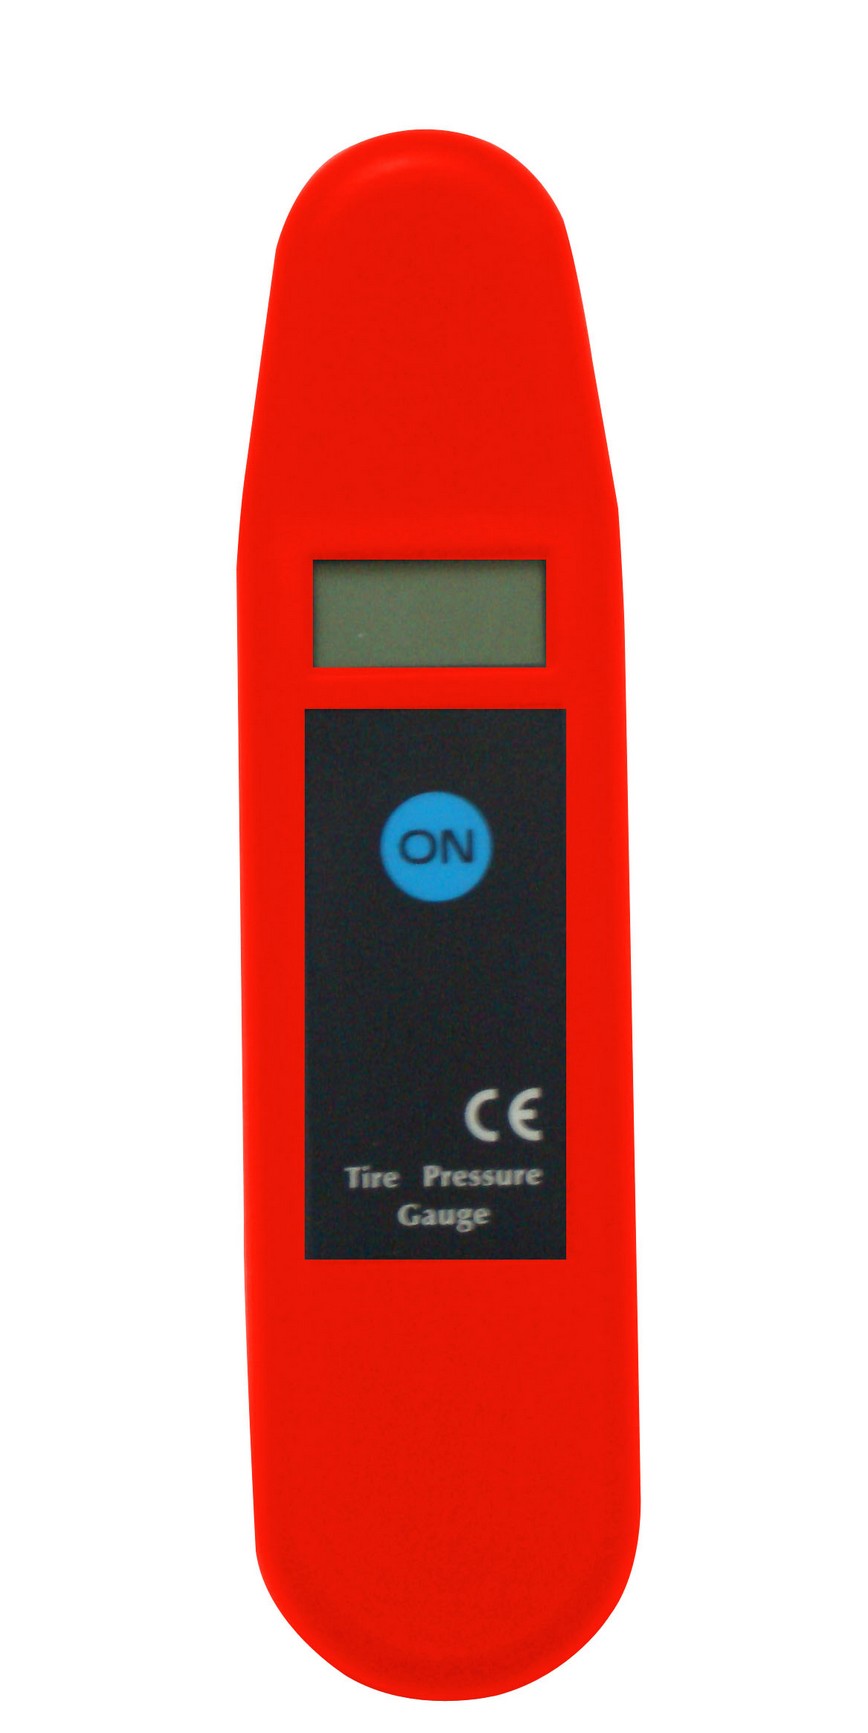  Sound Level Meter (Измеритель уровня звука)